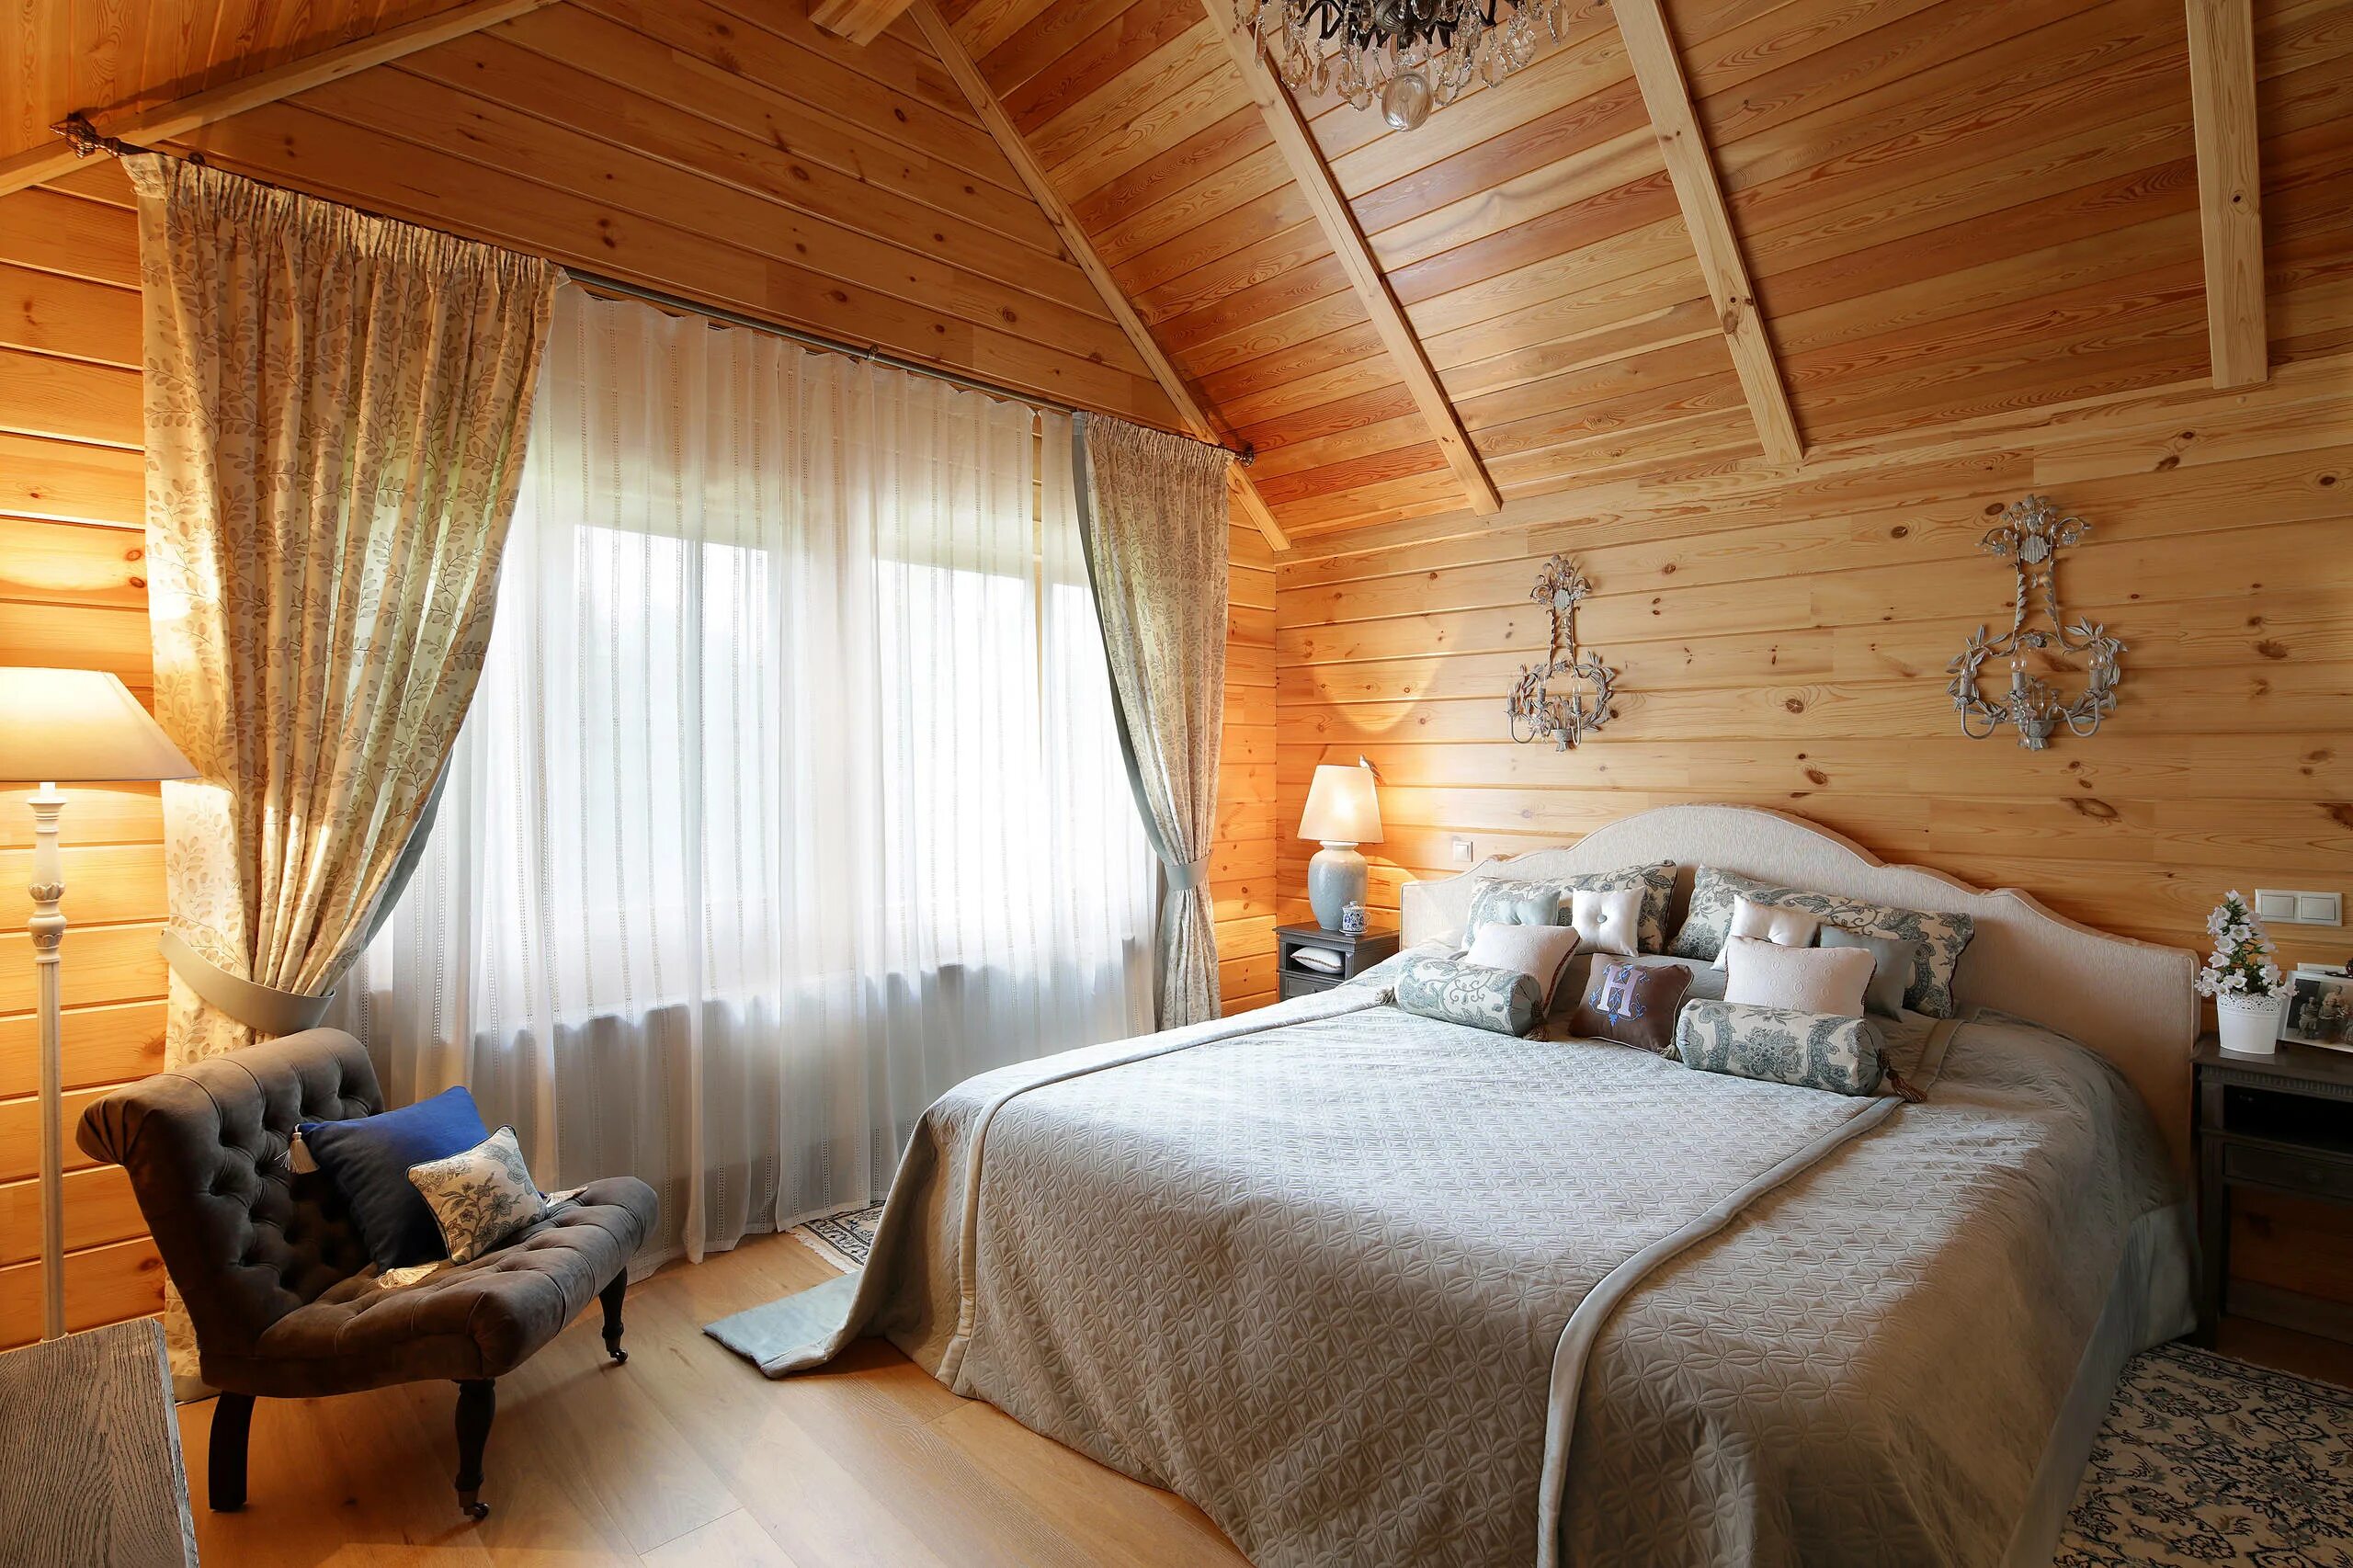 Дизайн комнат в деревянном доме. Интерьер спальни в деревянном доме. Спальня на даче. Интерьер деревянного дома. Спальня в загородном деревянном доме.